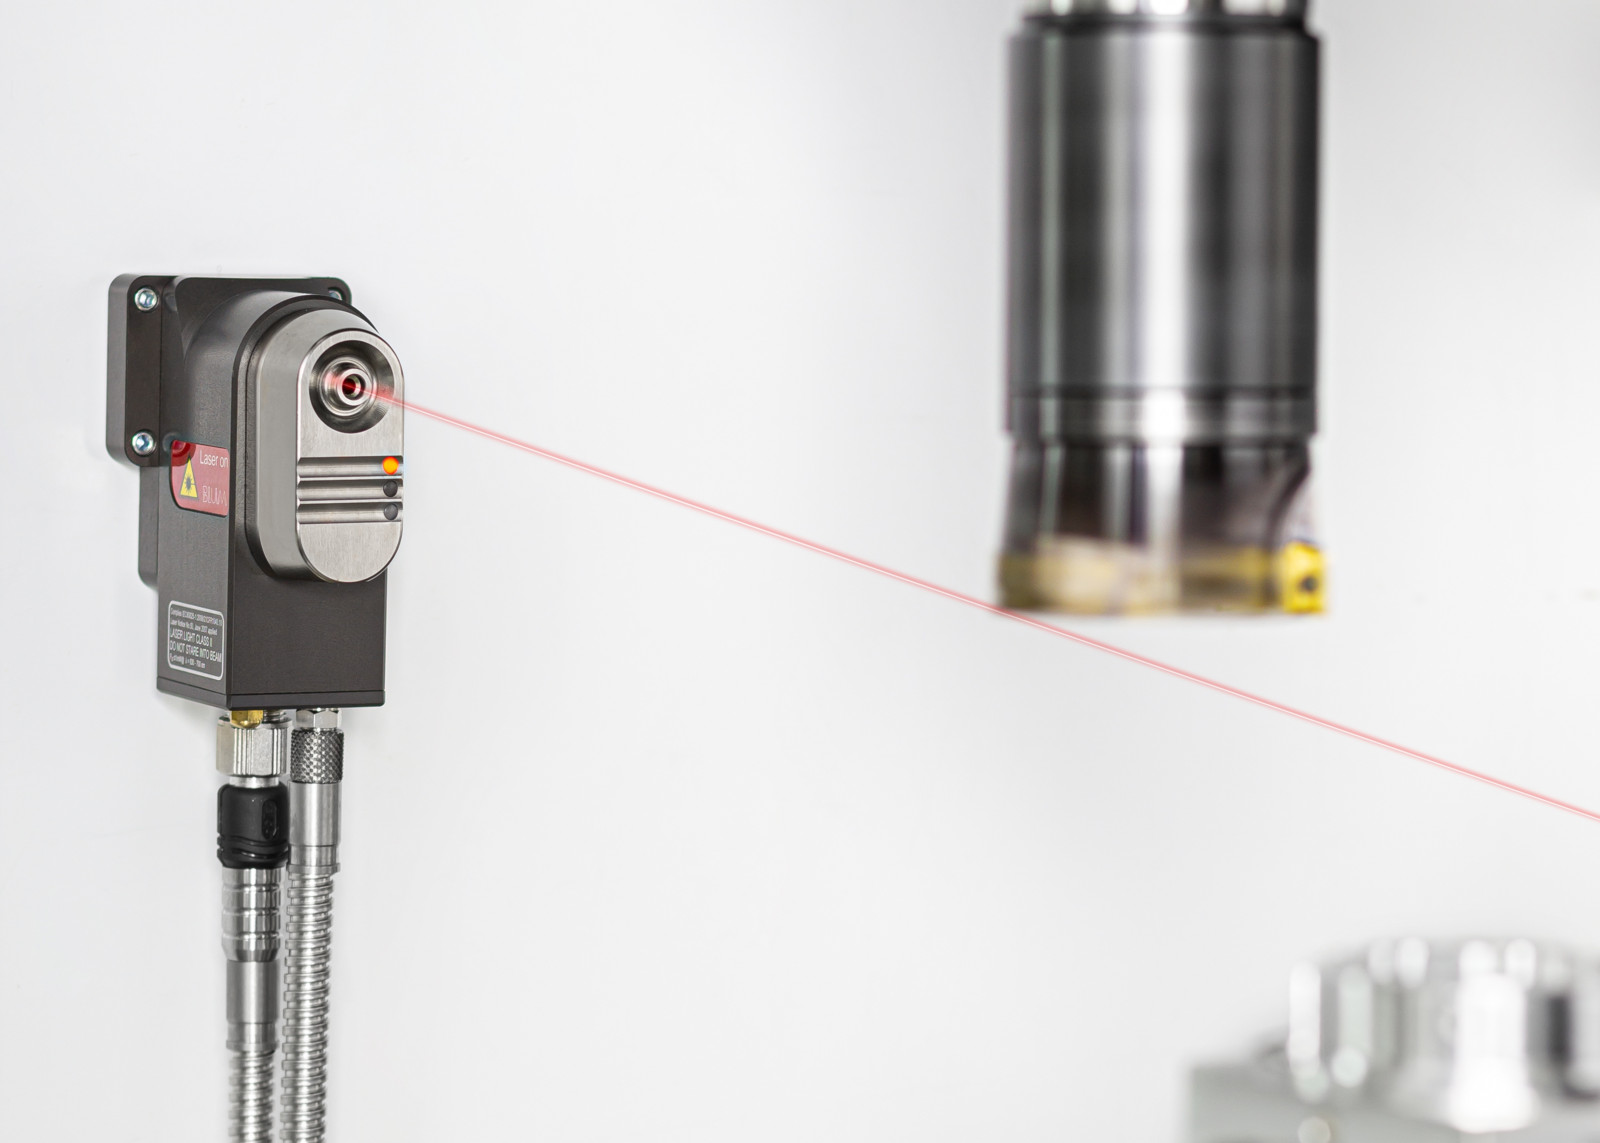 Der LC53-Digilog kann flexibel an der Maschinenwand montiert werden. Wie alle aktuellen Lasermesssysteme von Blum verfügt auch der LC53-Digilog über die zukunftsweisende Digilog-Technologie, eine hochpräzise Laseroptik und das einzigartige Schutzsystem.